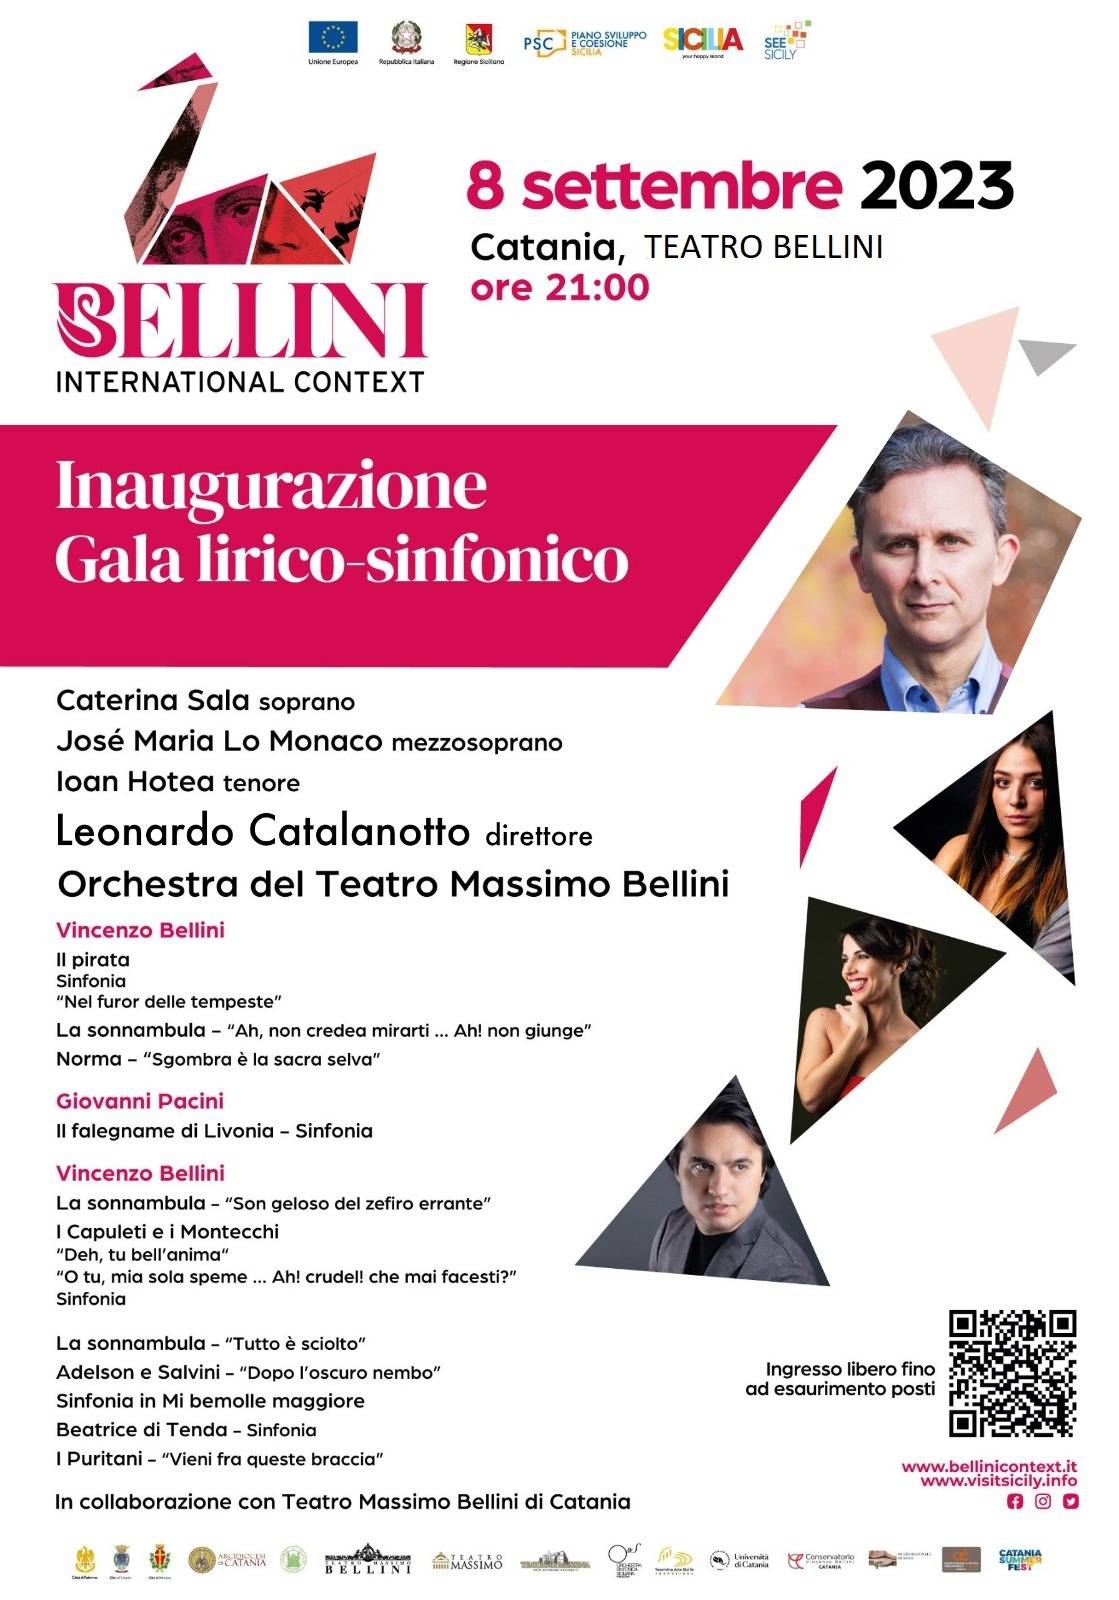 il Gala lirico-sinfonico di inaugurazione del Bellini International Context andrà in scena venerdì 8 settembre alle ore 21:00 presso il Teatro Massimo Bellini